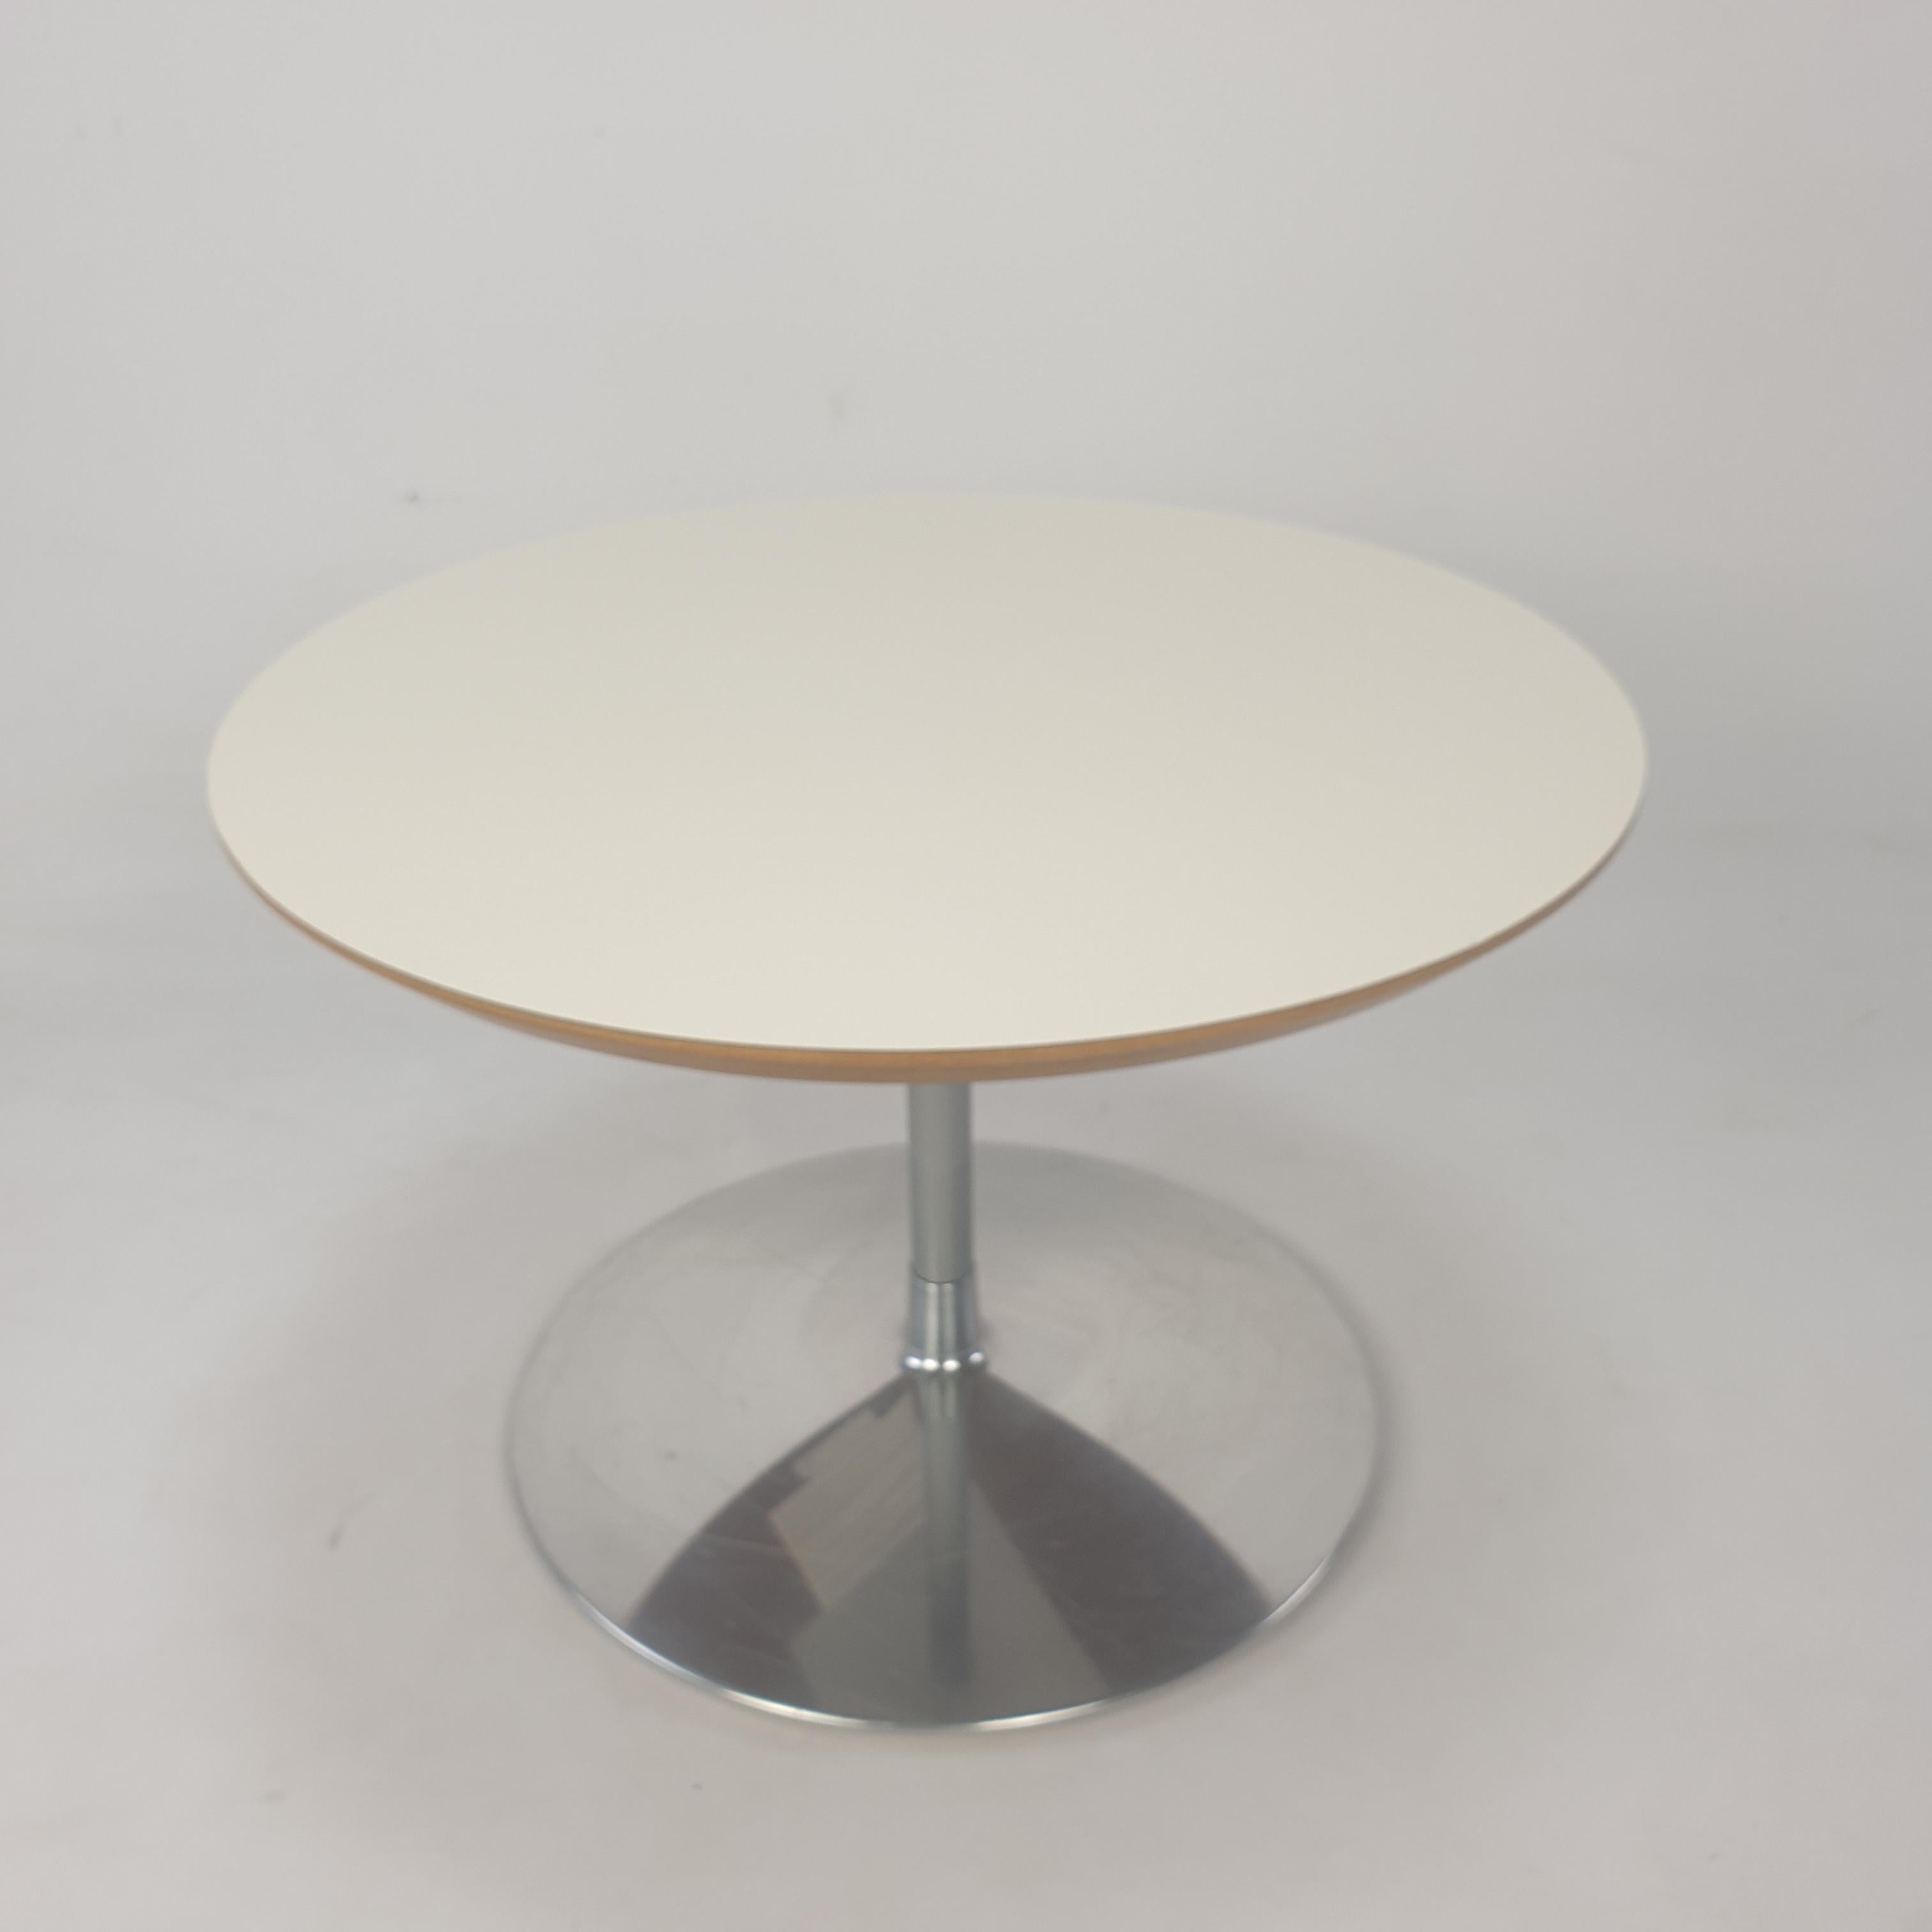 Très belle table basse ronde, conçue par Pierre Paulin dans les années 60. 

Le nom de la table est 